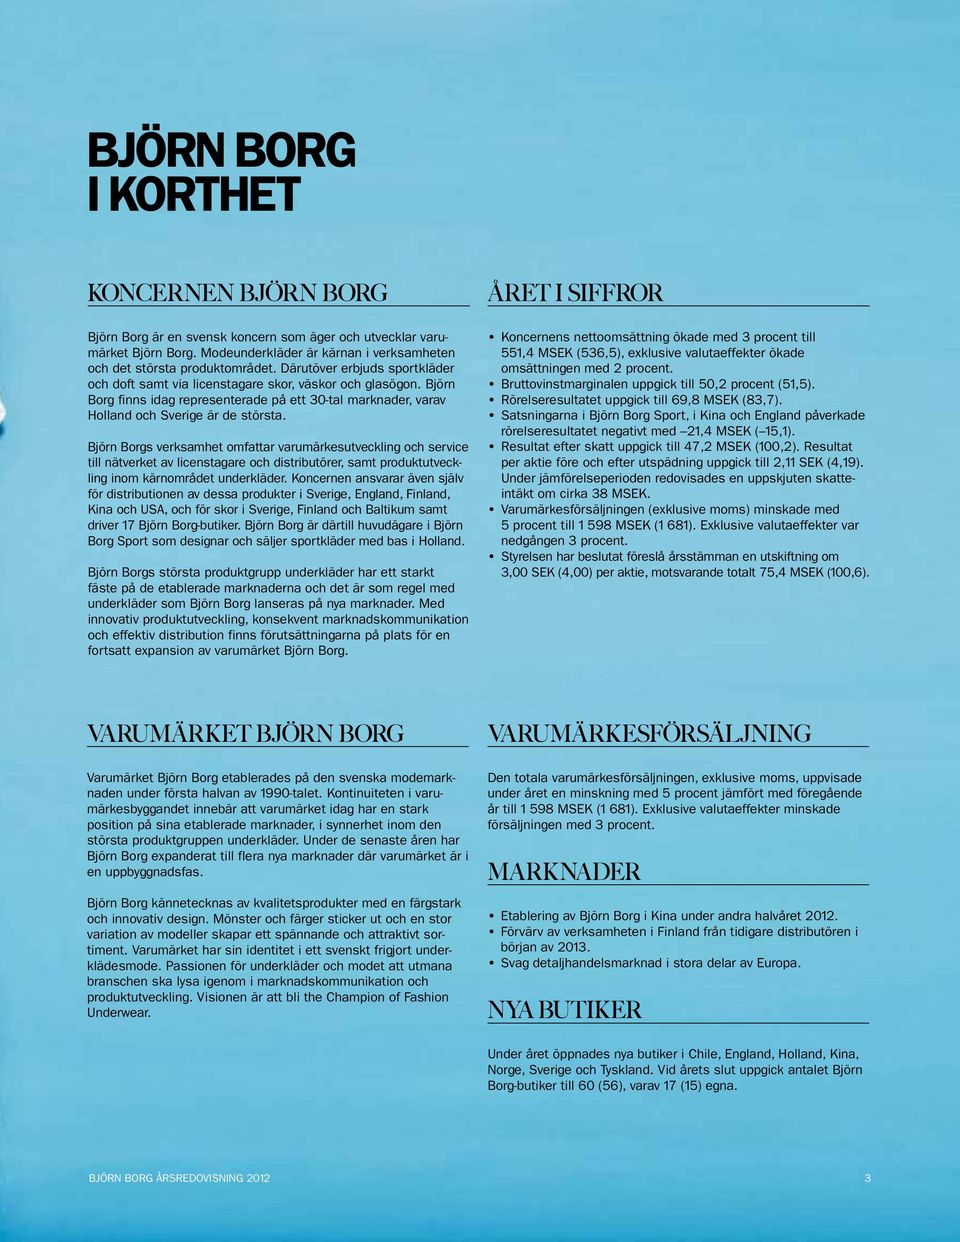 Björn Borgs verksamhet omfattar varumärkesutveckling och service till nätverket av licenstagare och distributörer, samt produktutveckling inom kärnområdet underkläder.